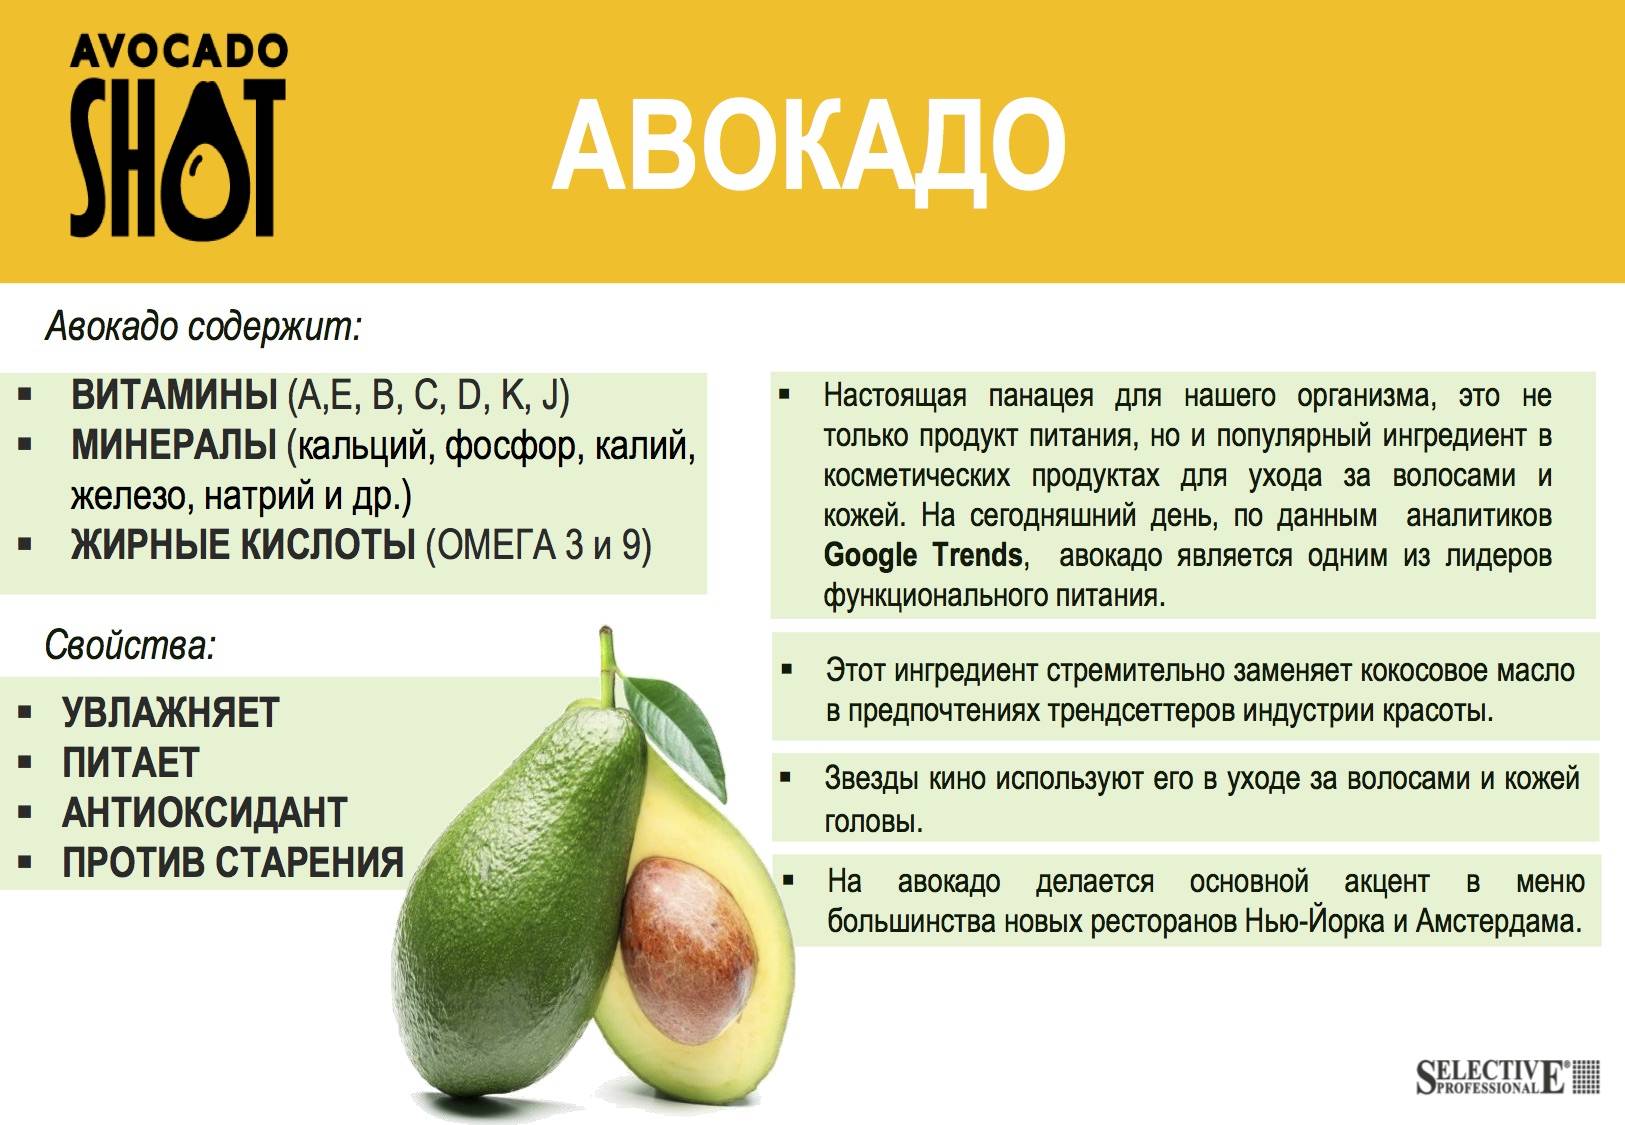 Авокадо — его полезные свойства применение и какие есть противопоказания